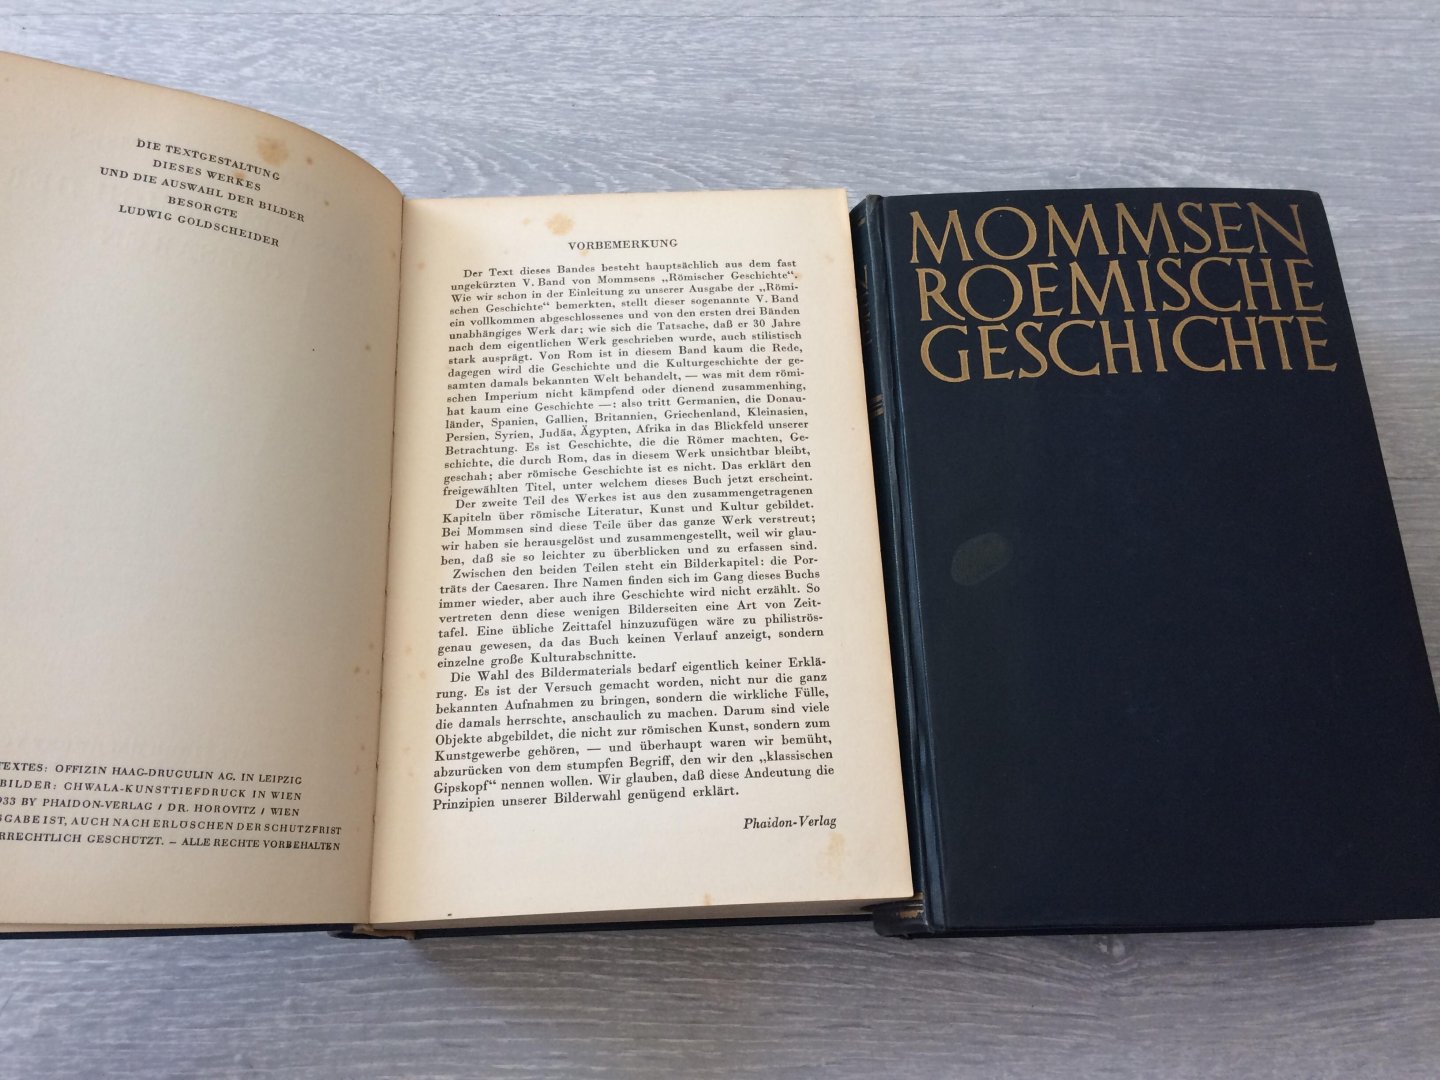 Theodor Mommsen - 2 teilen: DAS WELTREICH DER CAESAREN Mit Einem Nachwort Von Professor Eduard Norden & Mommsen Roemische geschichte